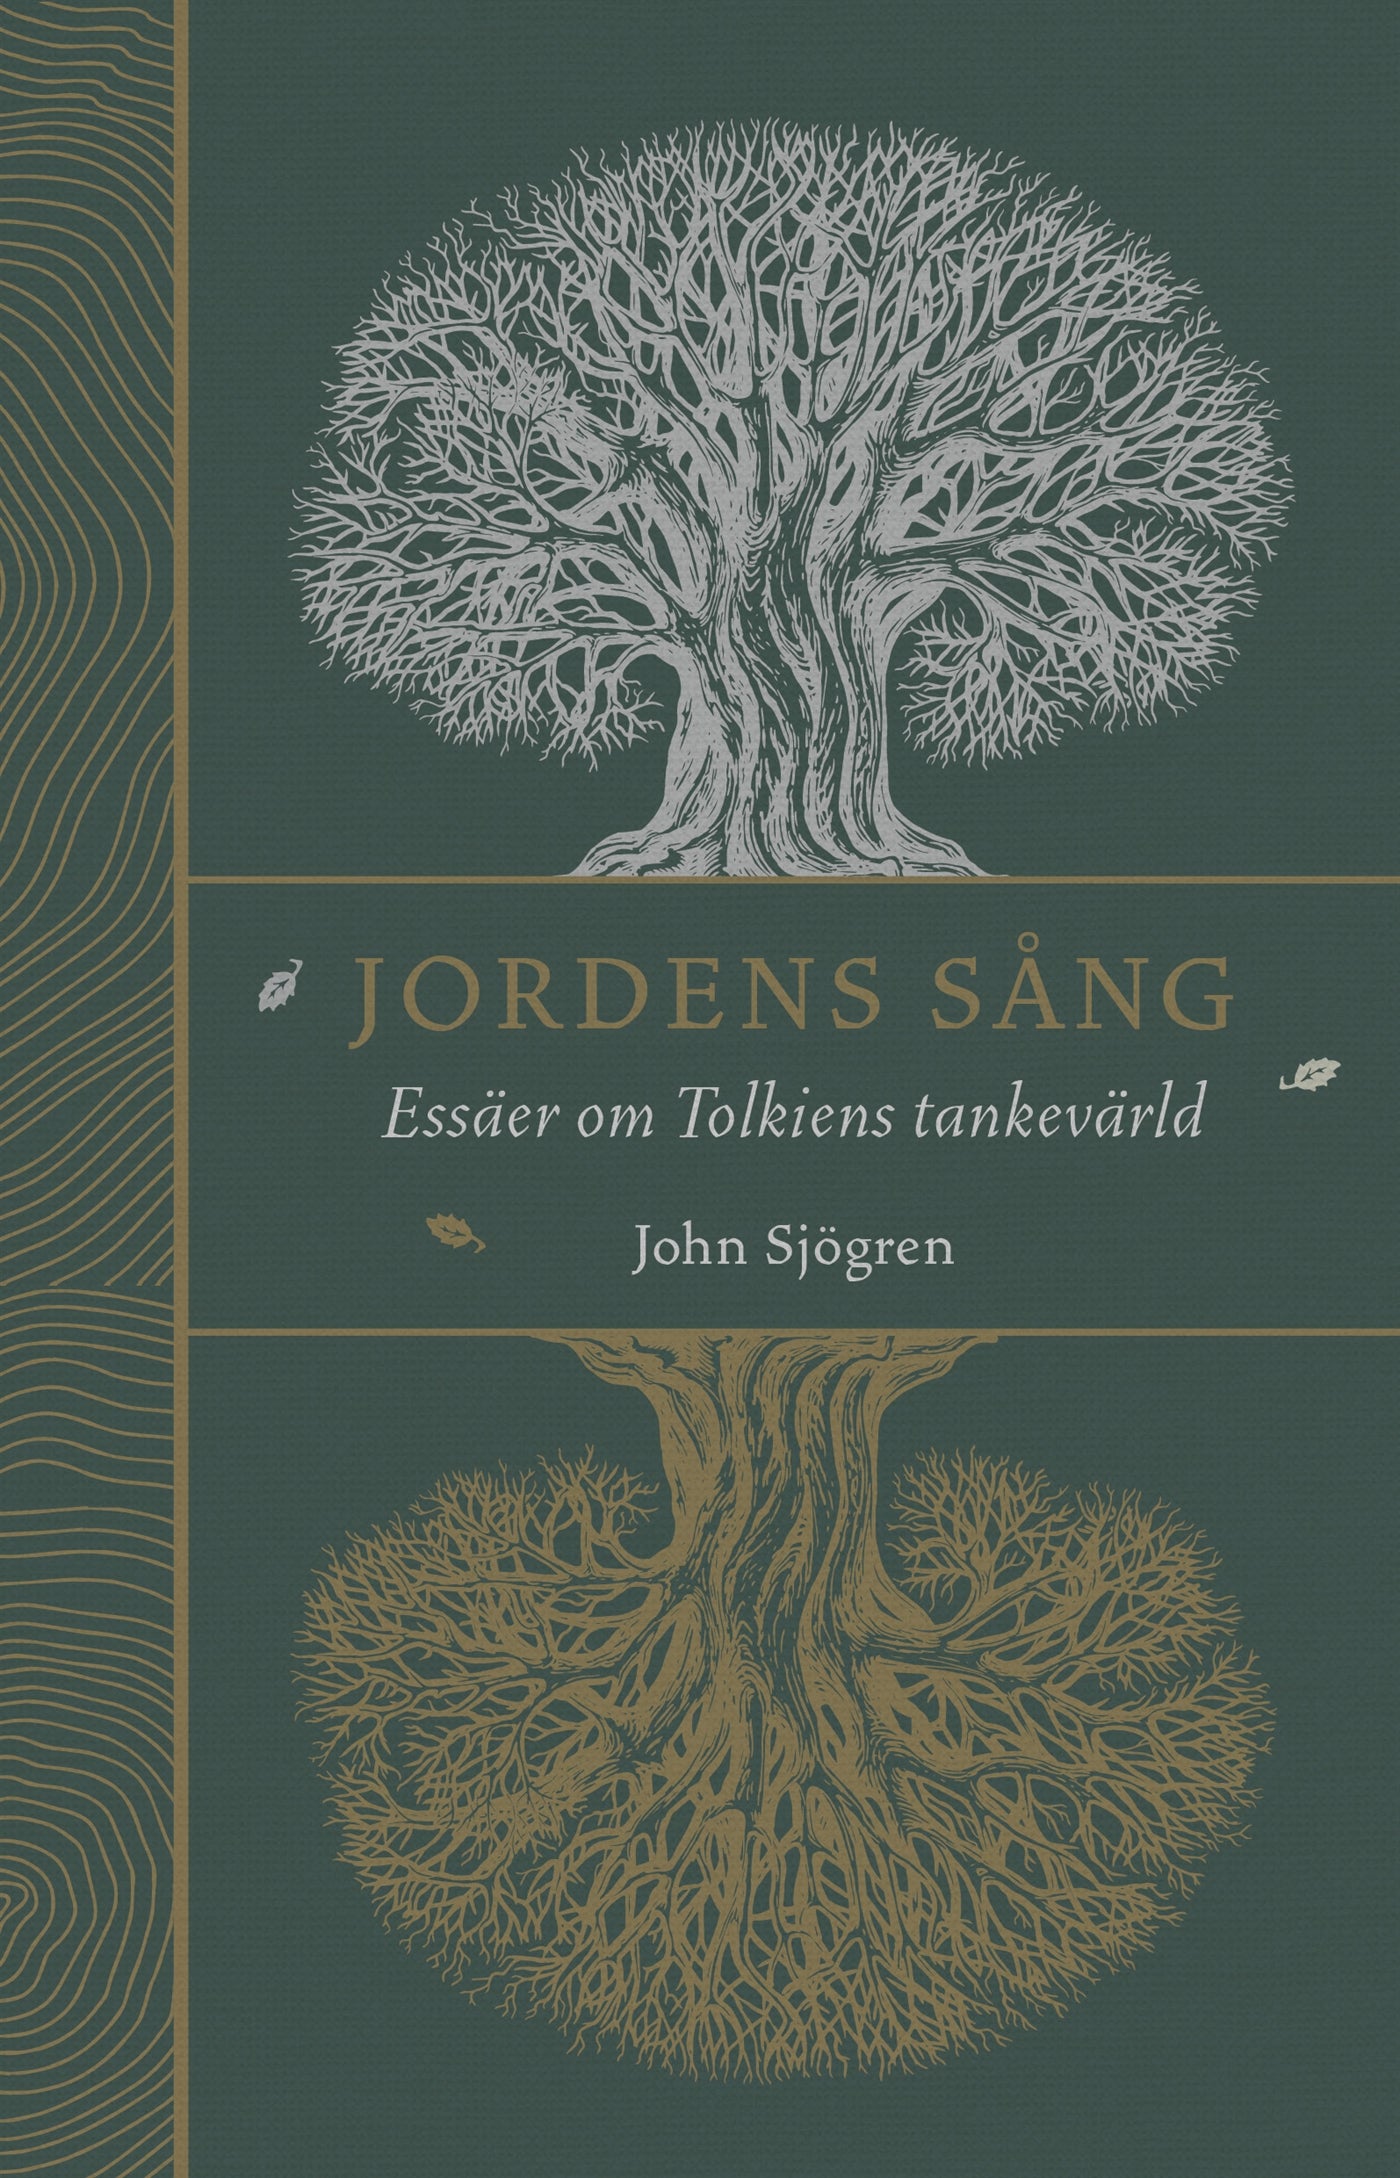 Jordens sång: Essäer om Tolkiens tankevärld – E-bok